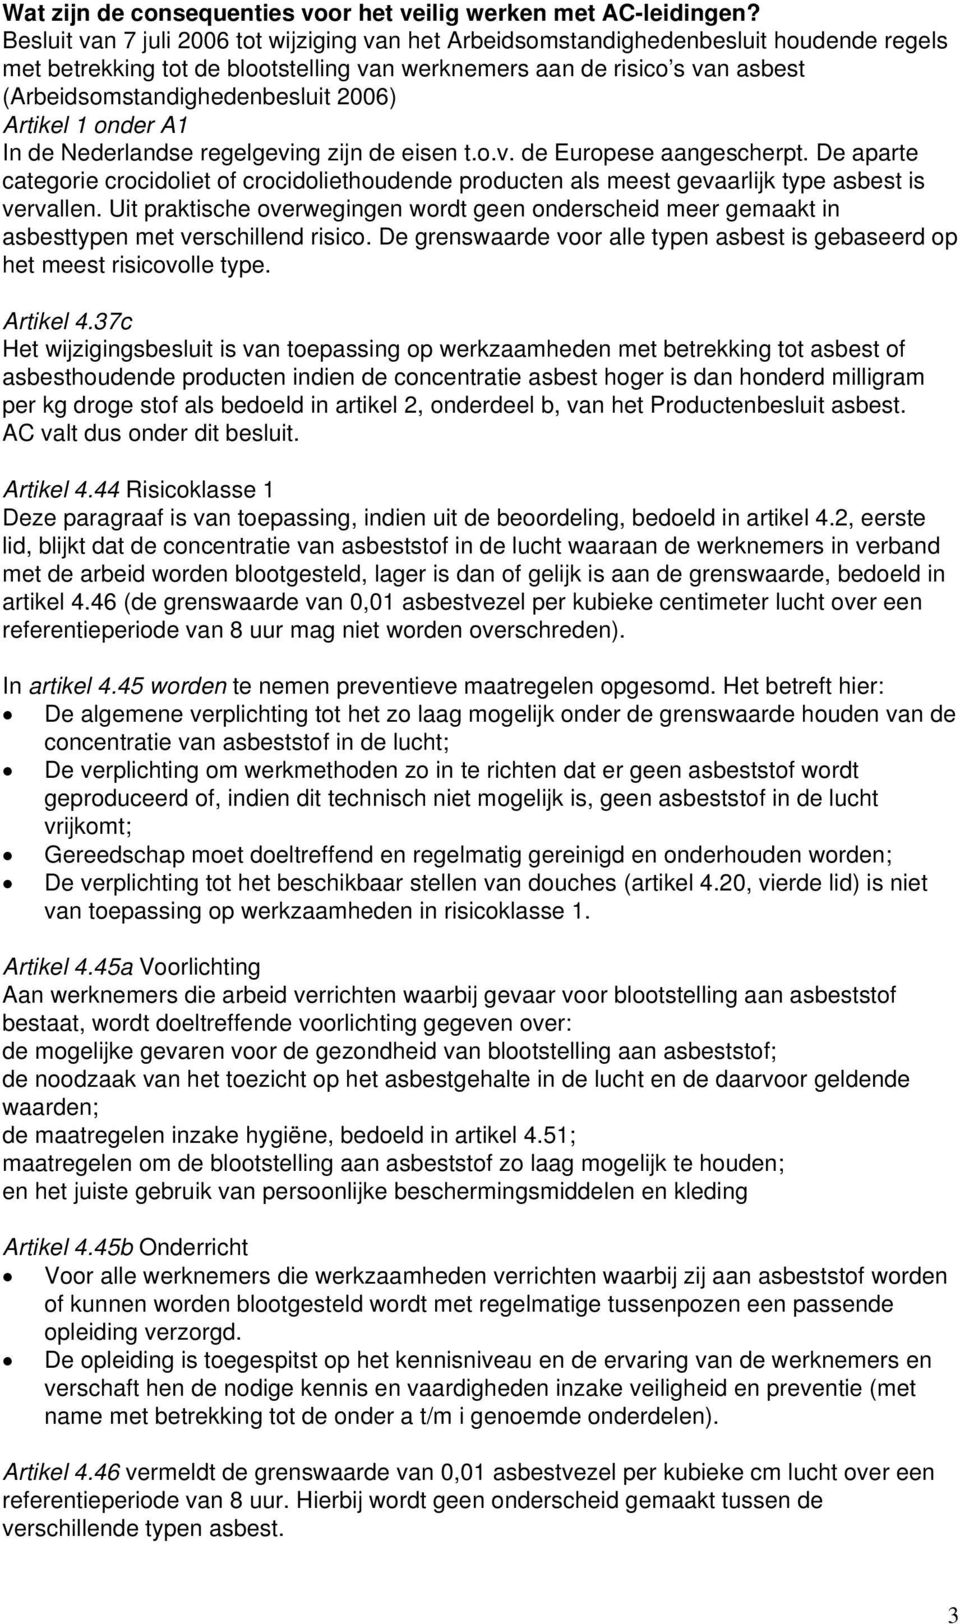 2006) Artikel 1 onder A1 In de Nederlandse regelgeving zijn de eisen t.o.v. de Europese aangescherpt.